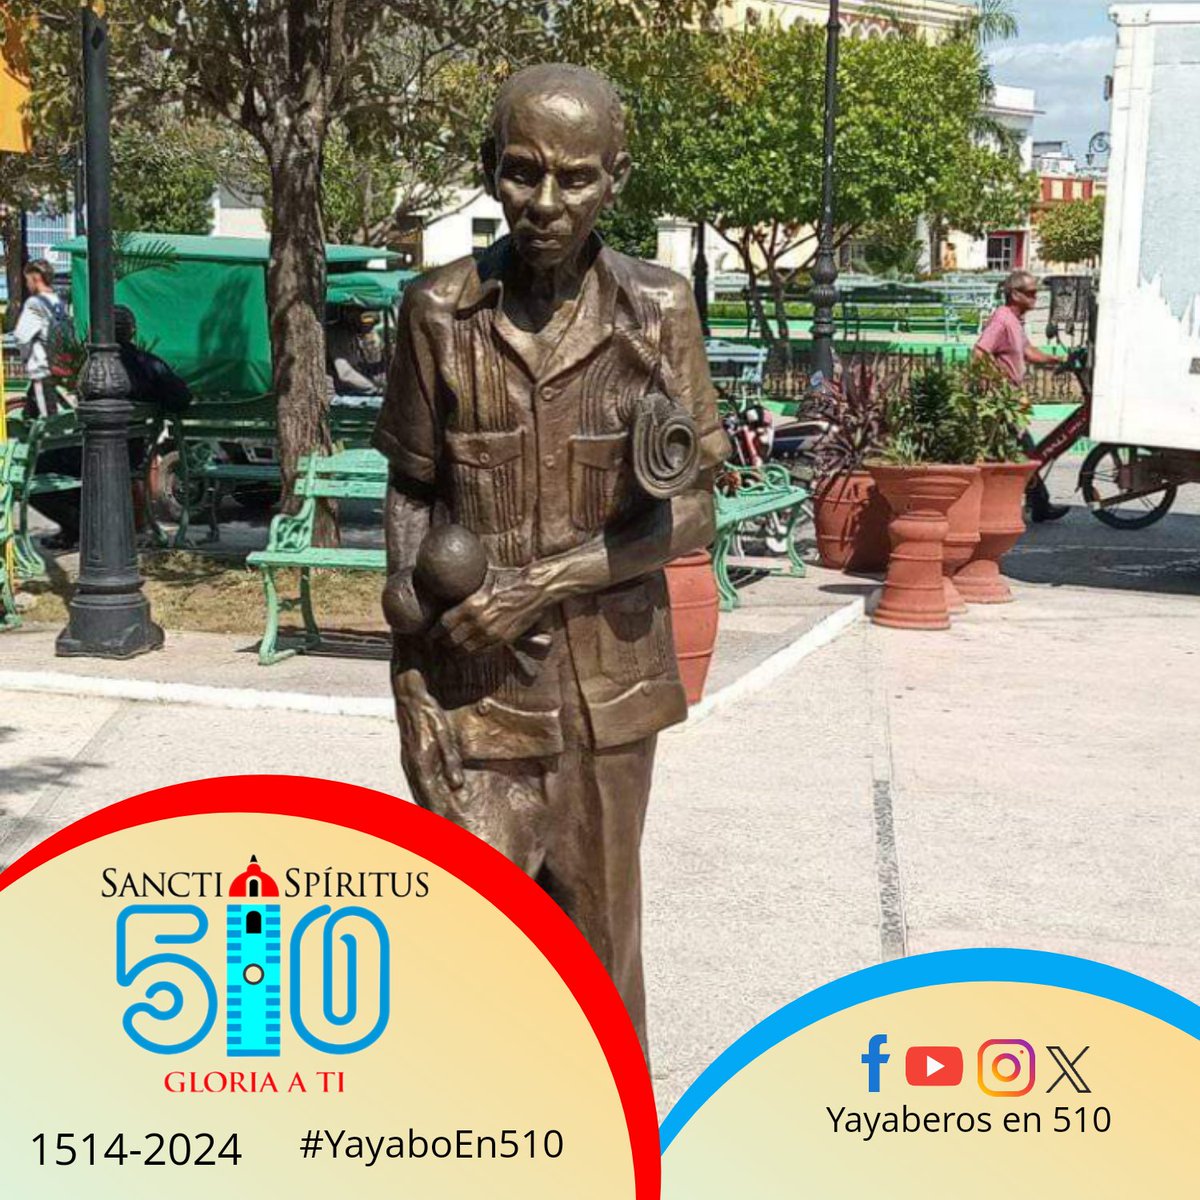 ¡Hoy celebramos la vida y el legado de Gerardo Echemendía Madrigal, nacido el 21 de mayo de 1925!

#CulturaCubana #YayaboEn510 #SanctiSpíritusEnMarcha #CubaViveEnSuHistoria

Sigan el hilo 👇🧵